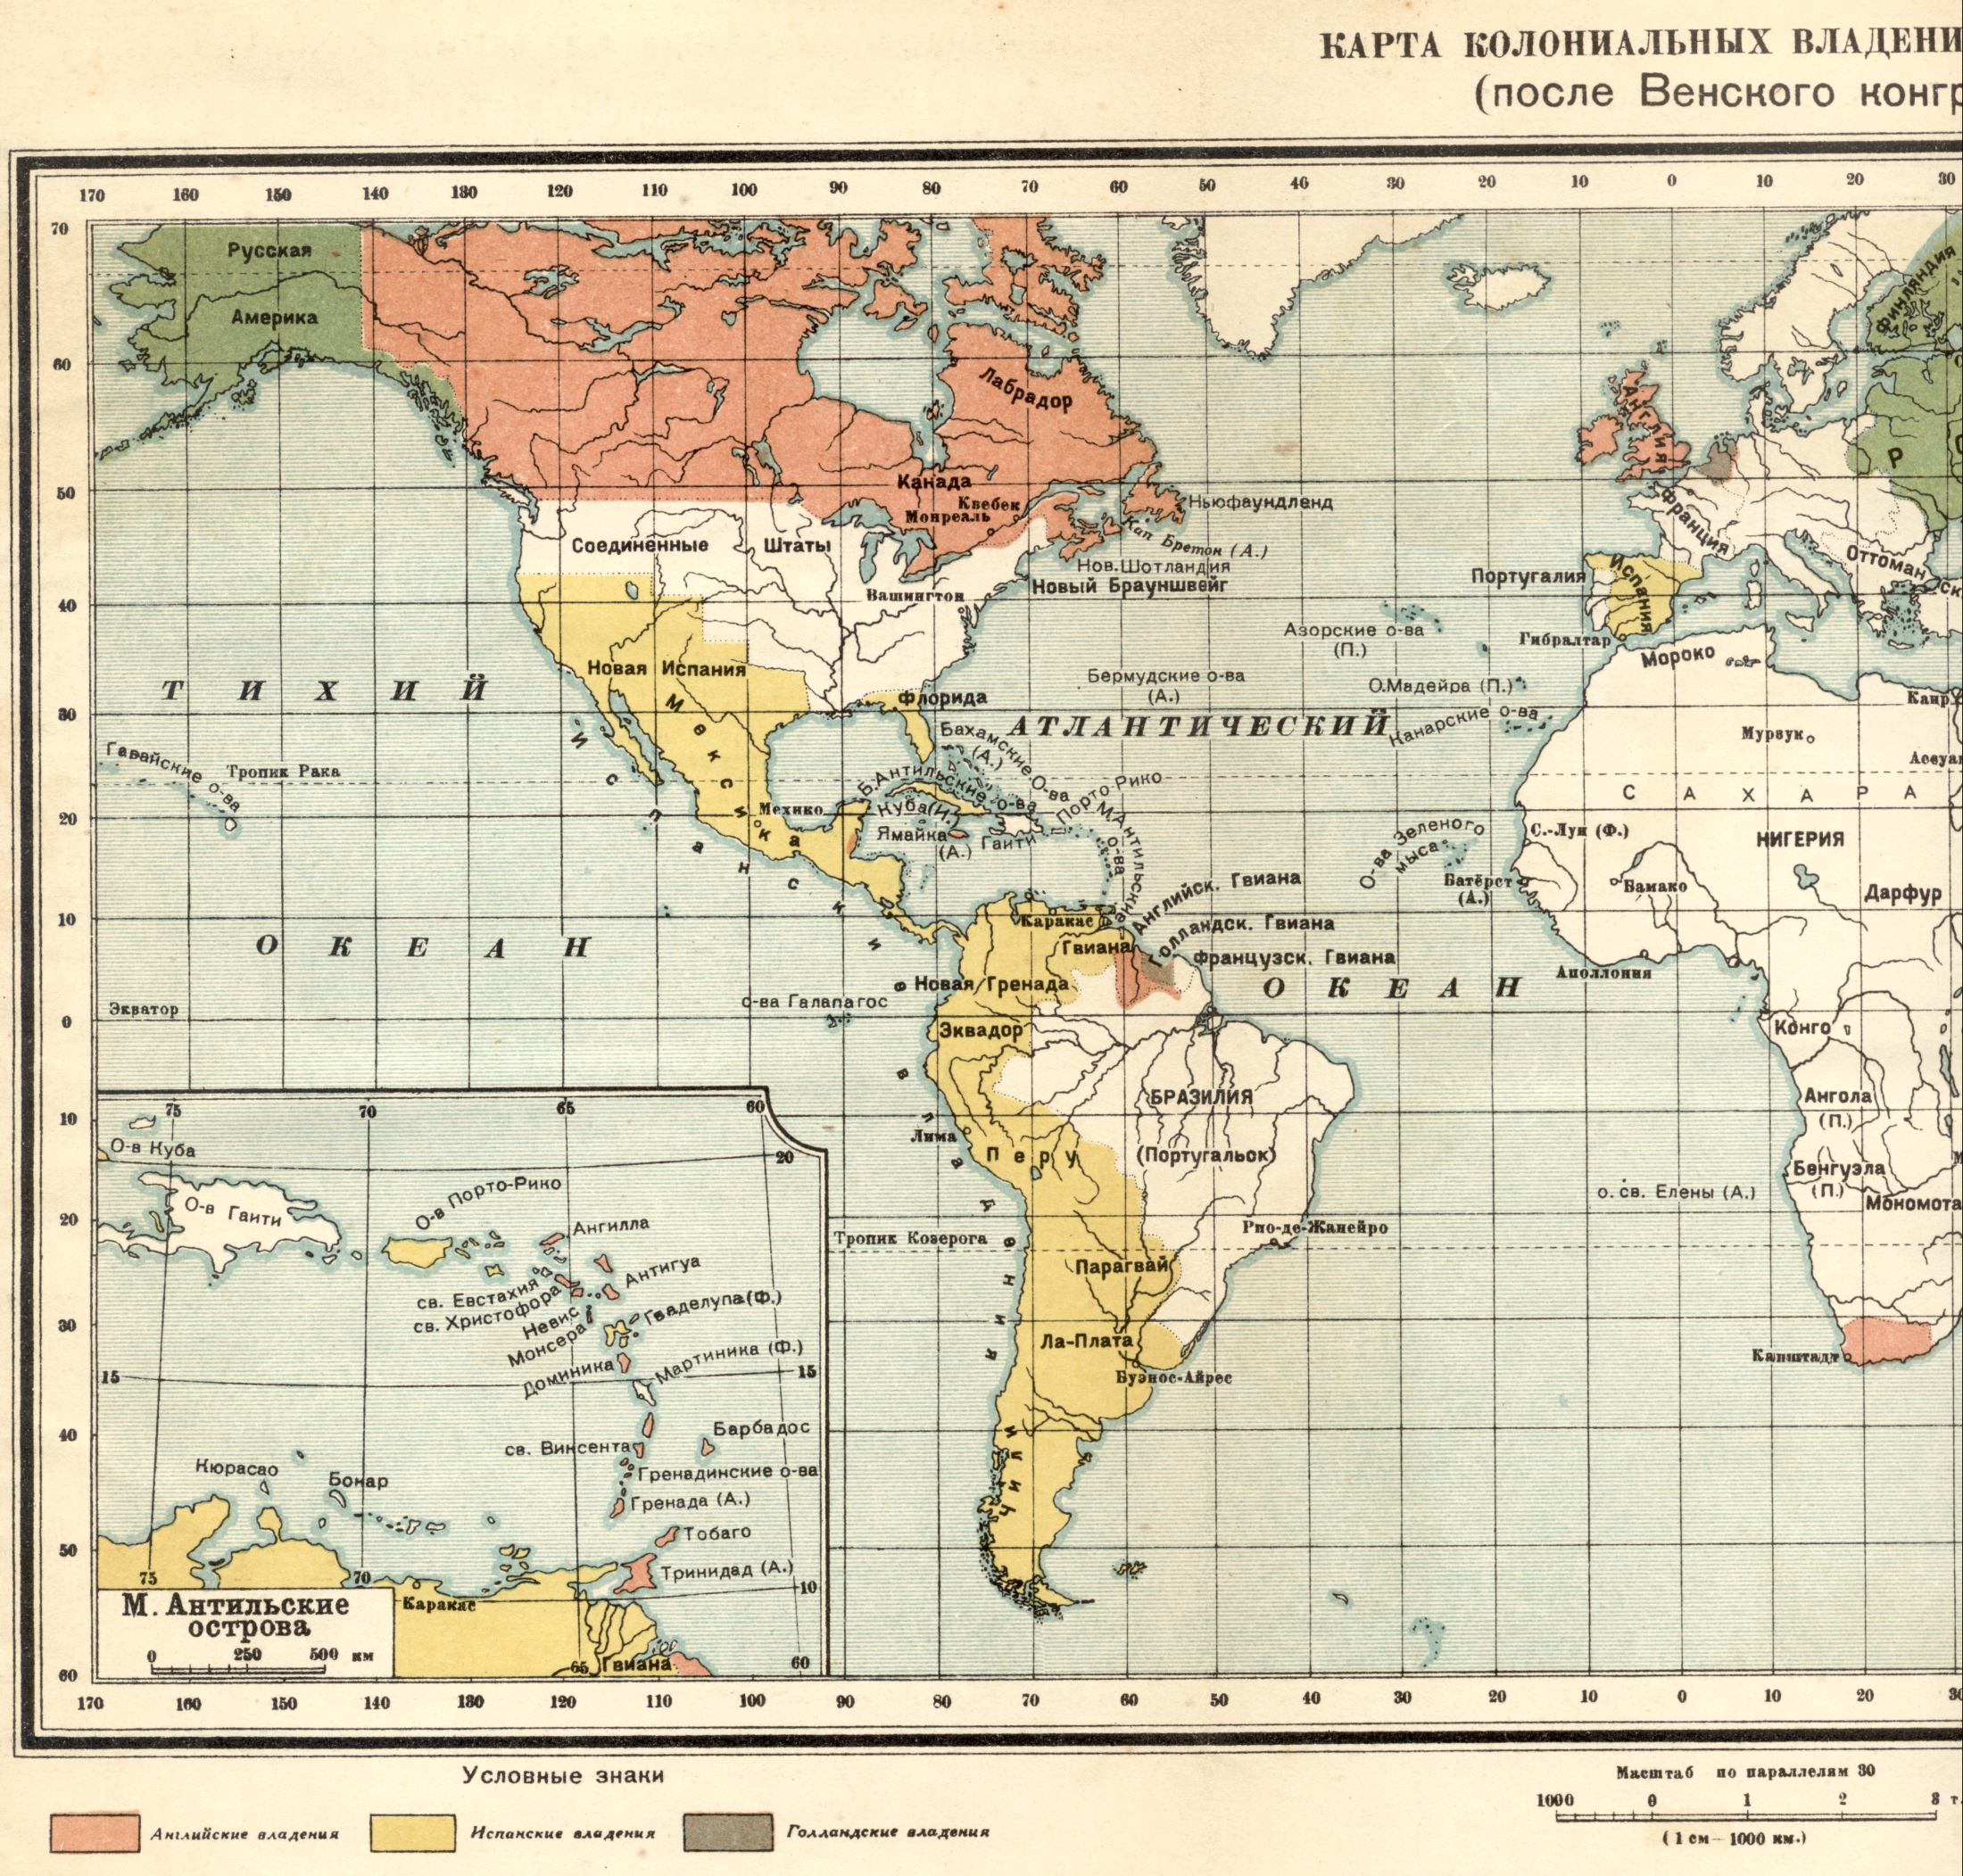 1815 год. Политическая карта мира - карта колониальных владений в 1815 году после Венского конгресса. Скачать бесплатно подробную карту 